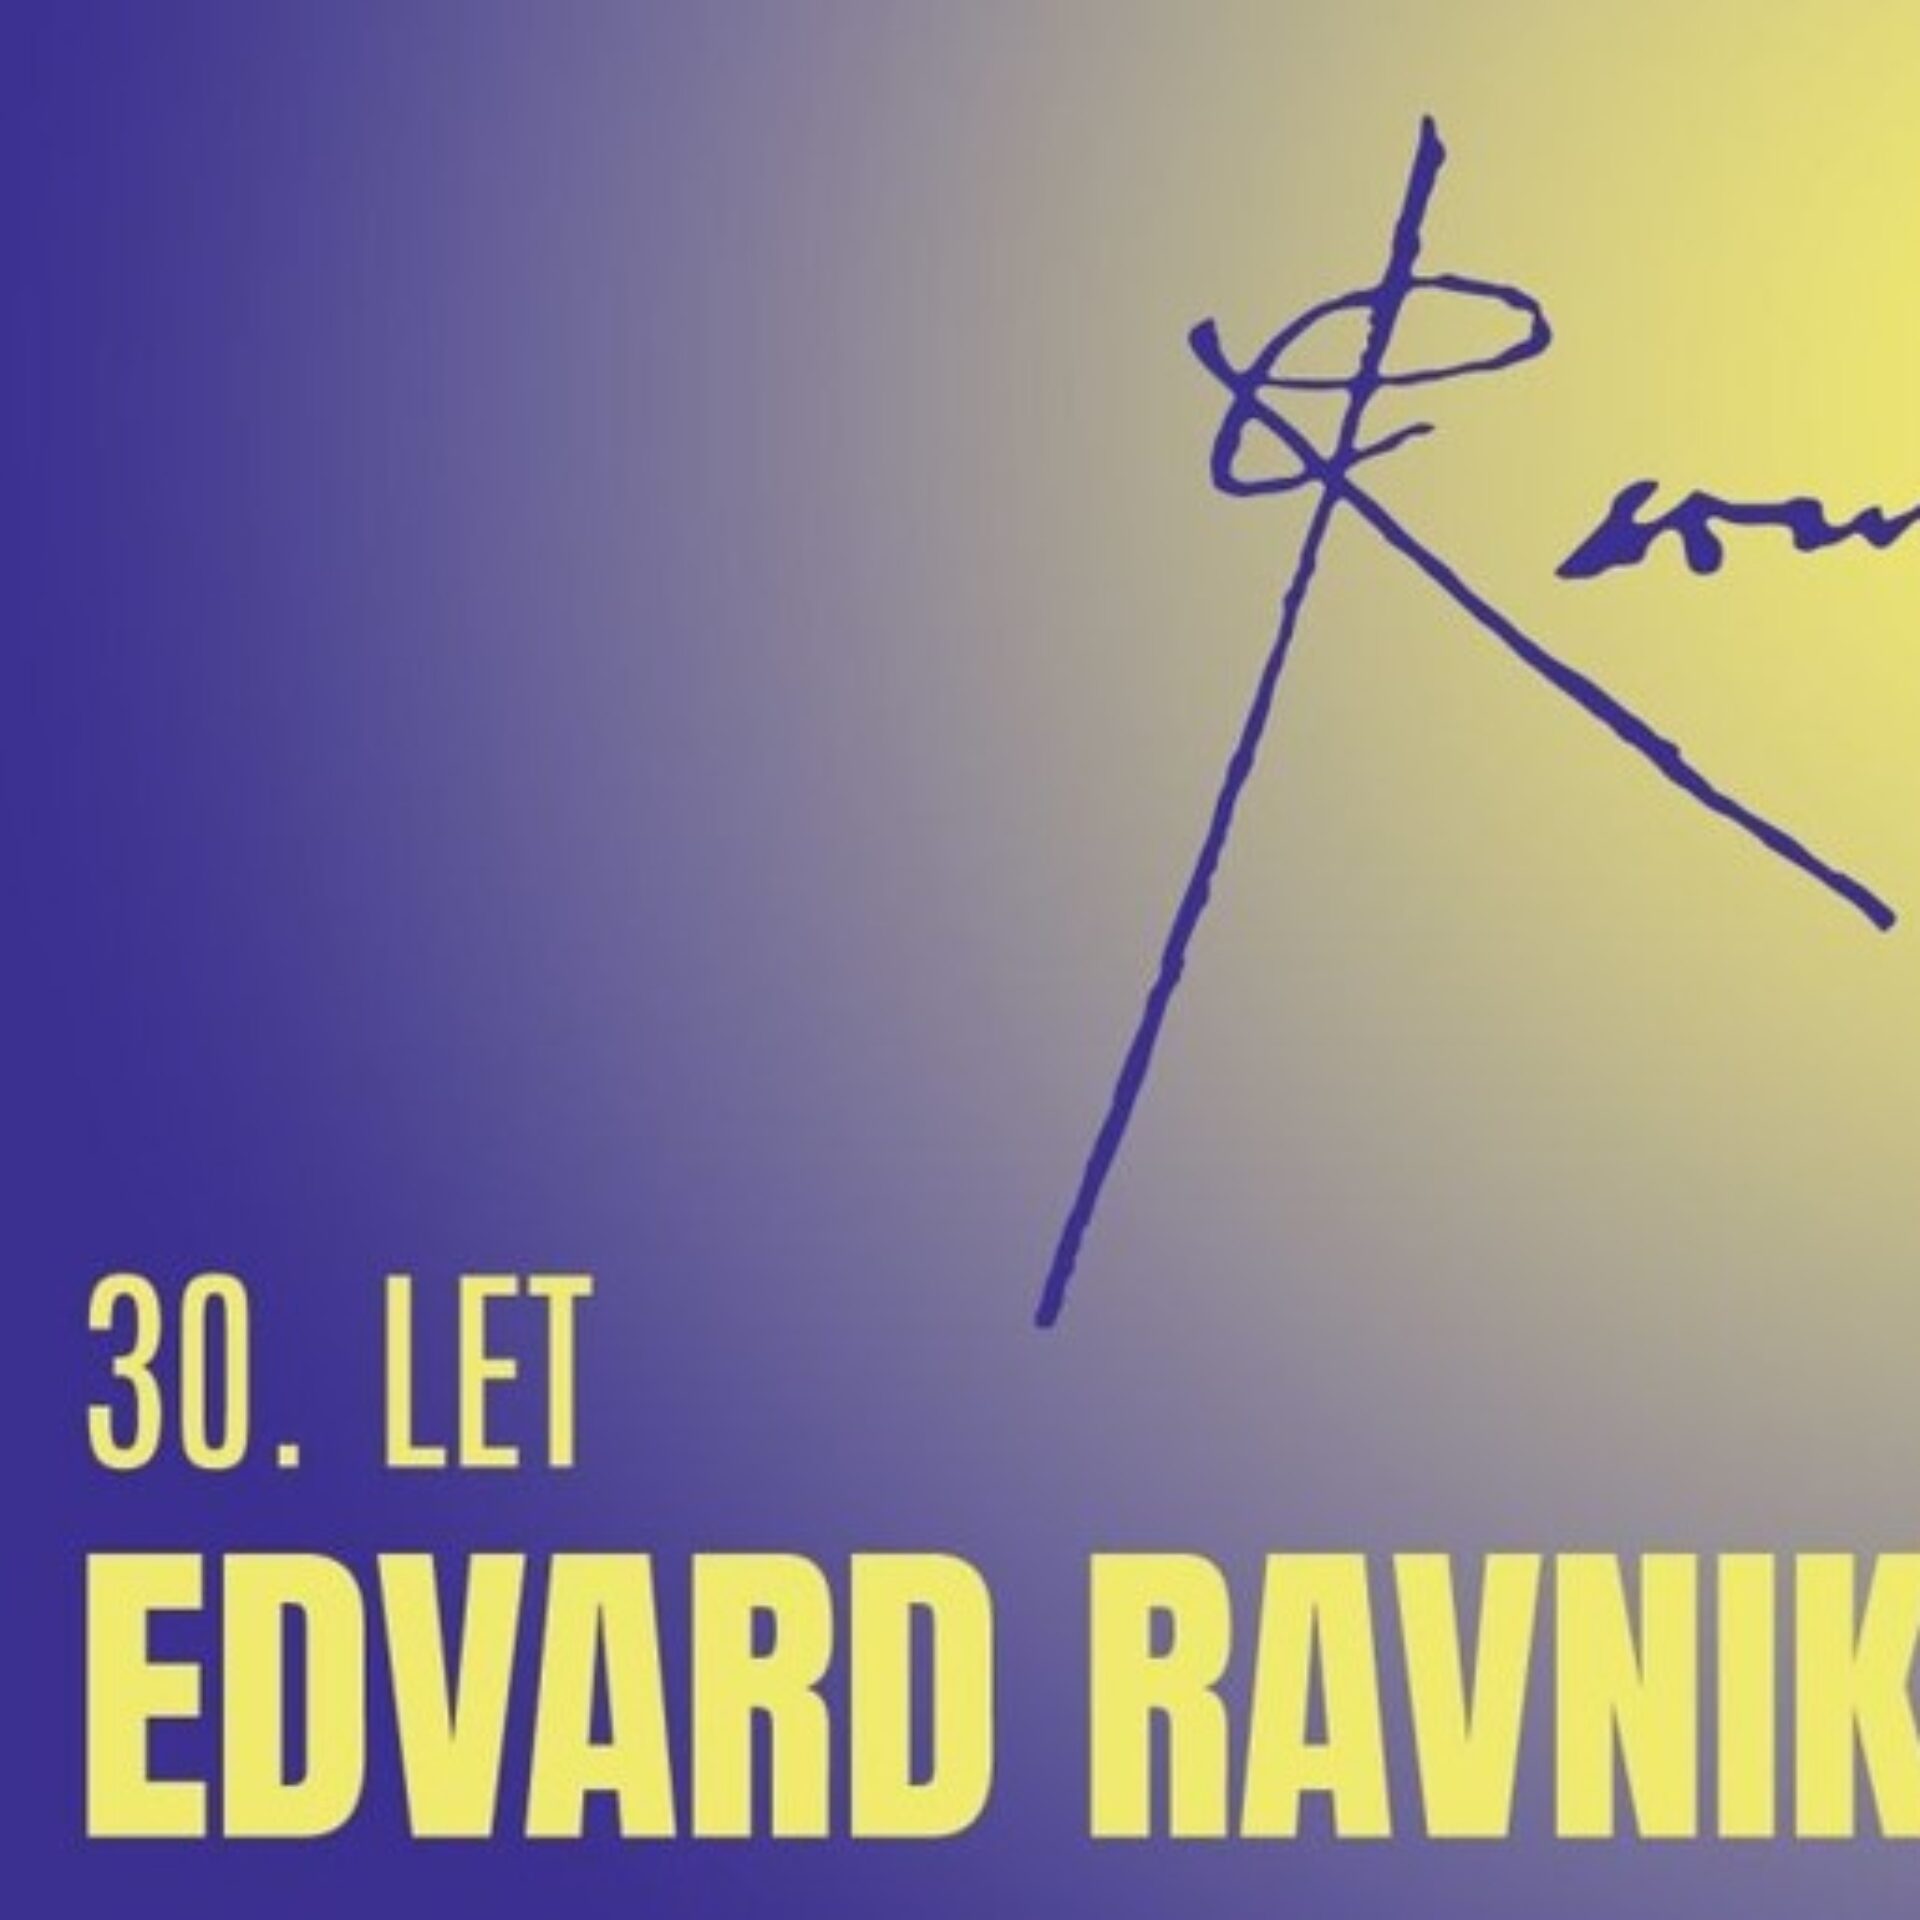 Veliki novoletni simpozij Edvard Ravnikar  - 30 let